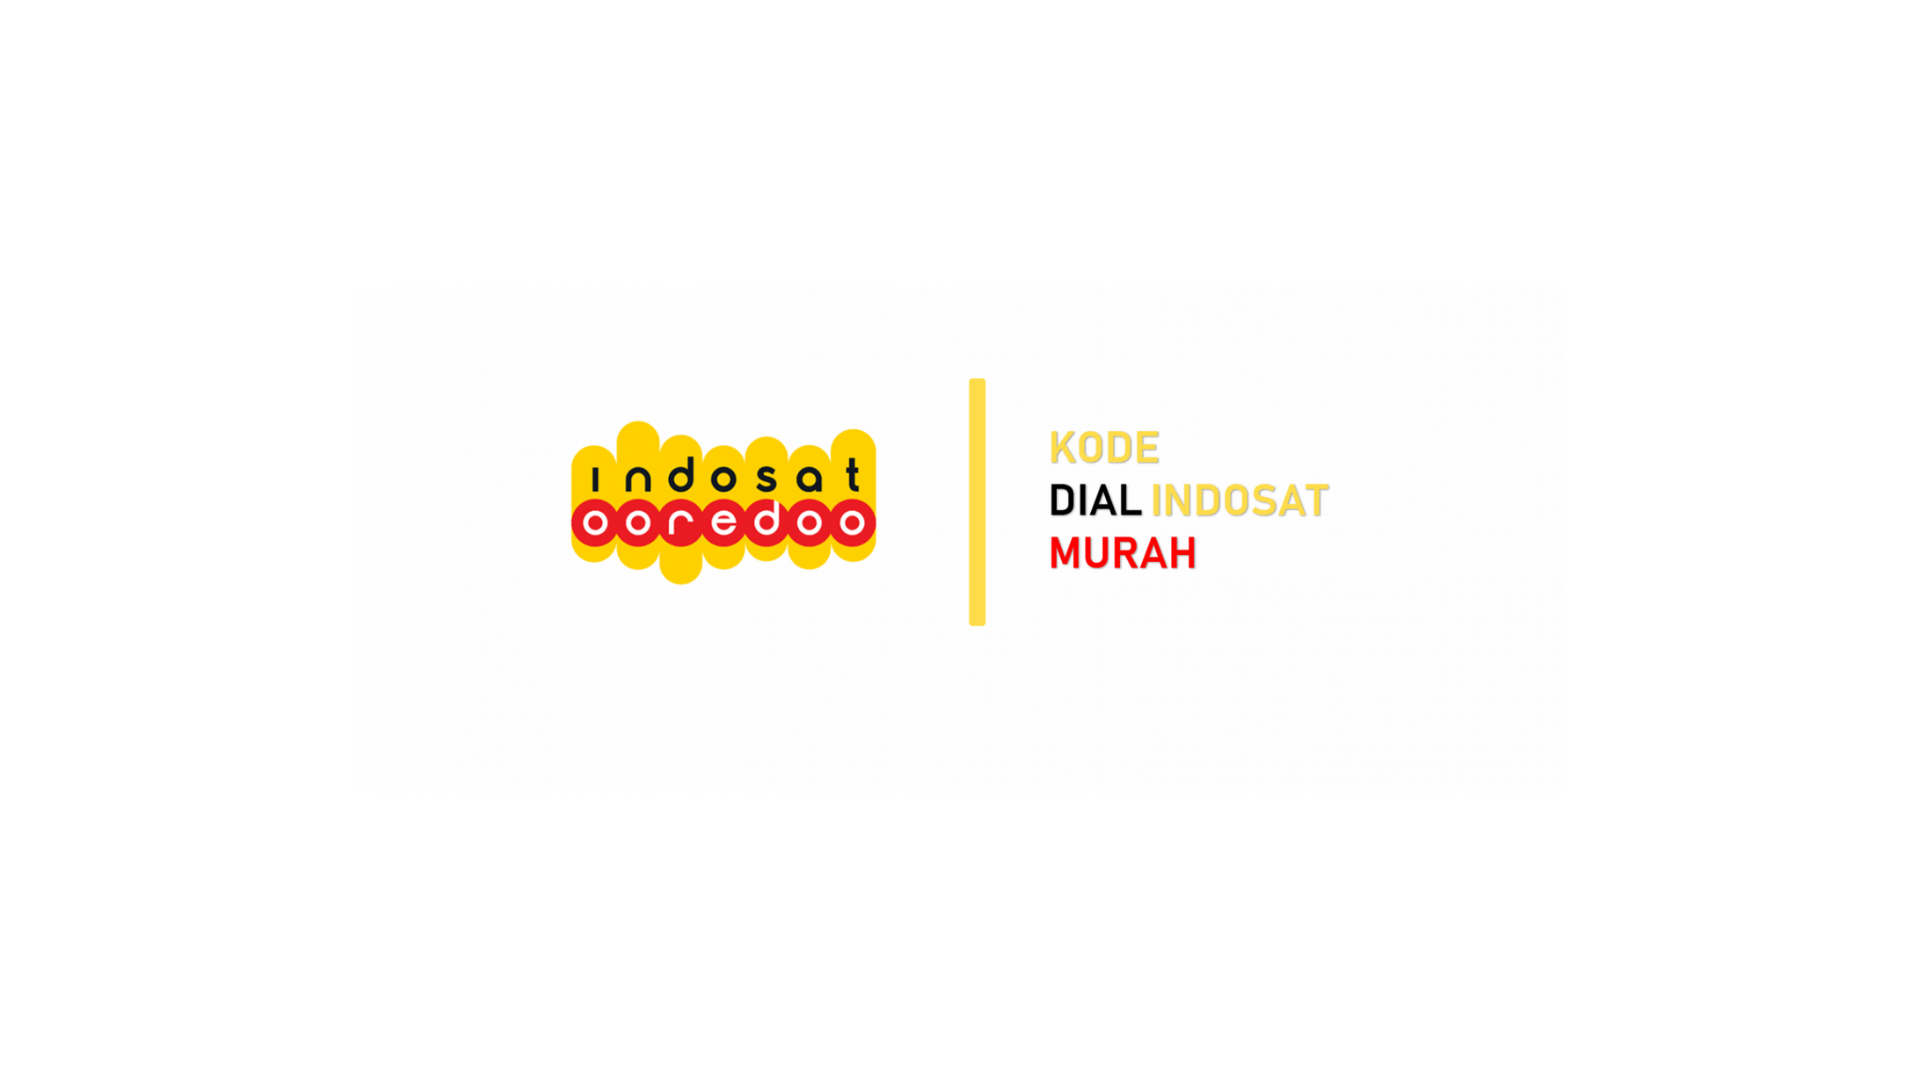 Kode Dial Indosat Murah 2021 Terbaru